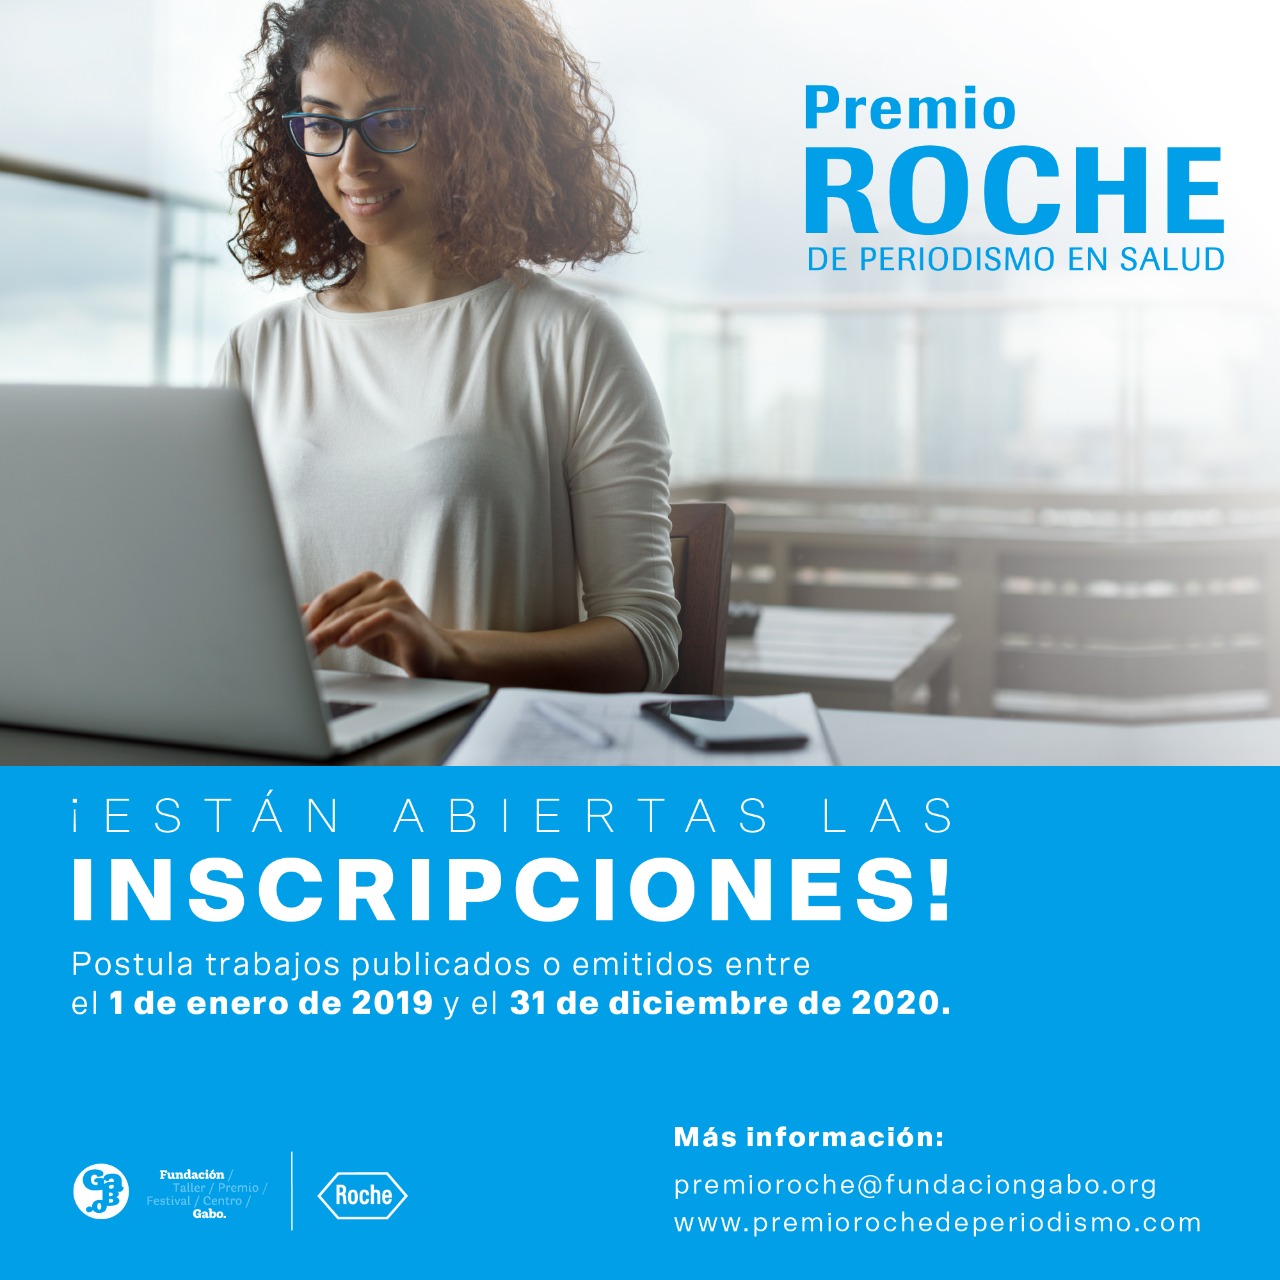 Inscripciones abiertas para el Premio Roche de Periodismo en Salud 2021